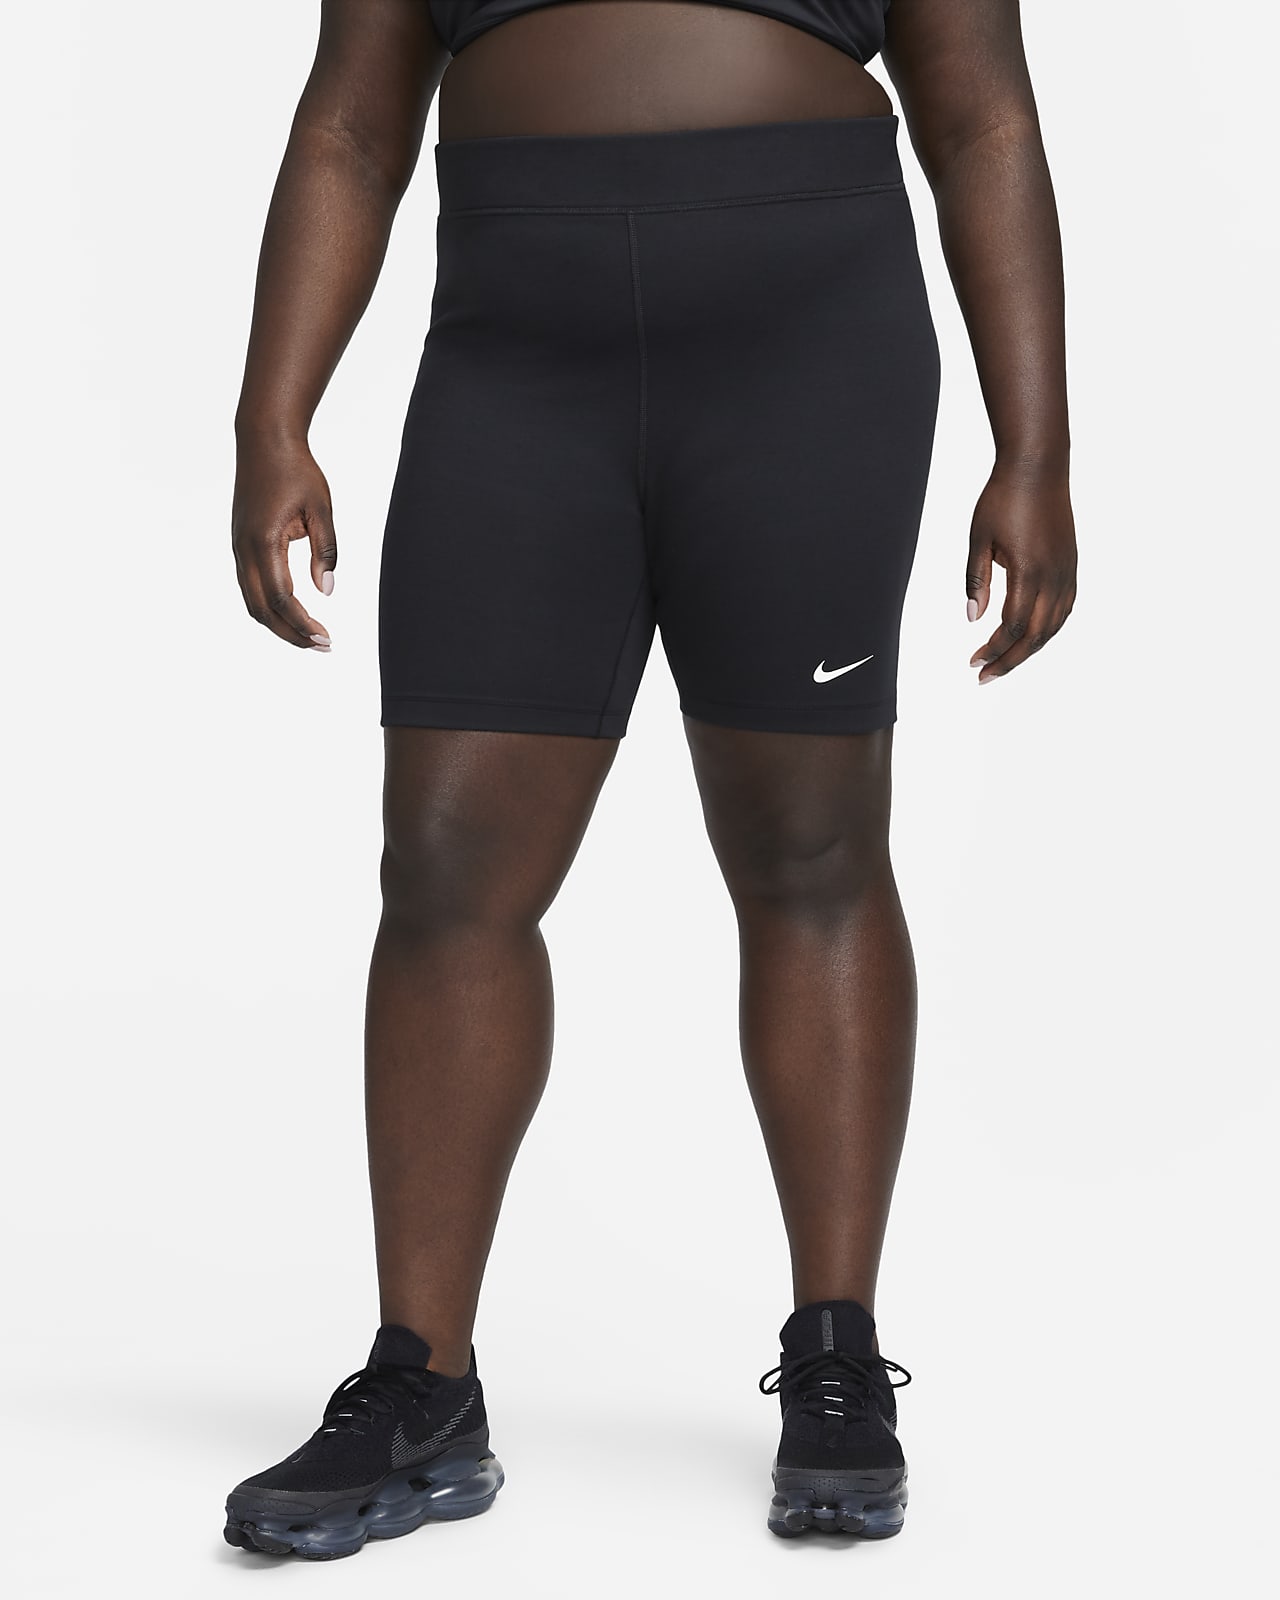 Nike Sportswear Classic magas derekú, 20 cm-es női kerékpáros rövidnadrág (plus size méret)